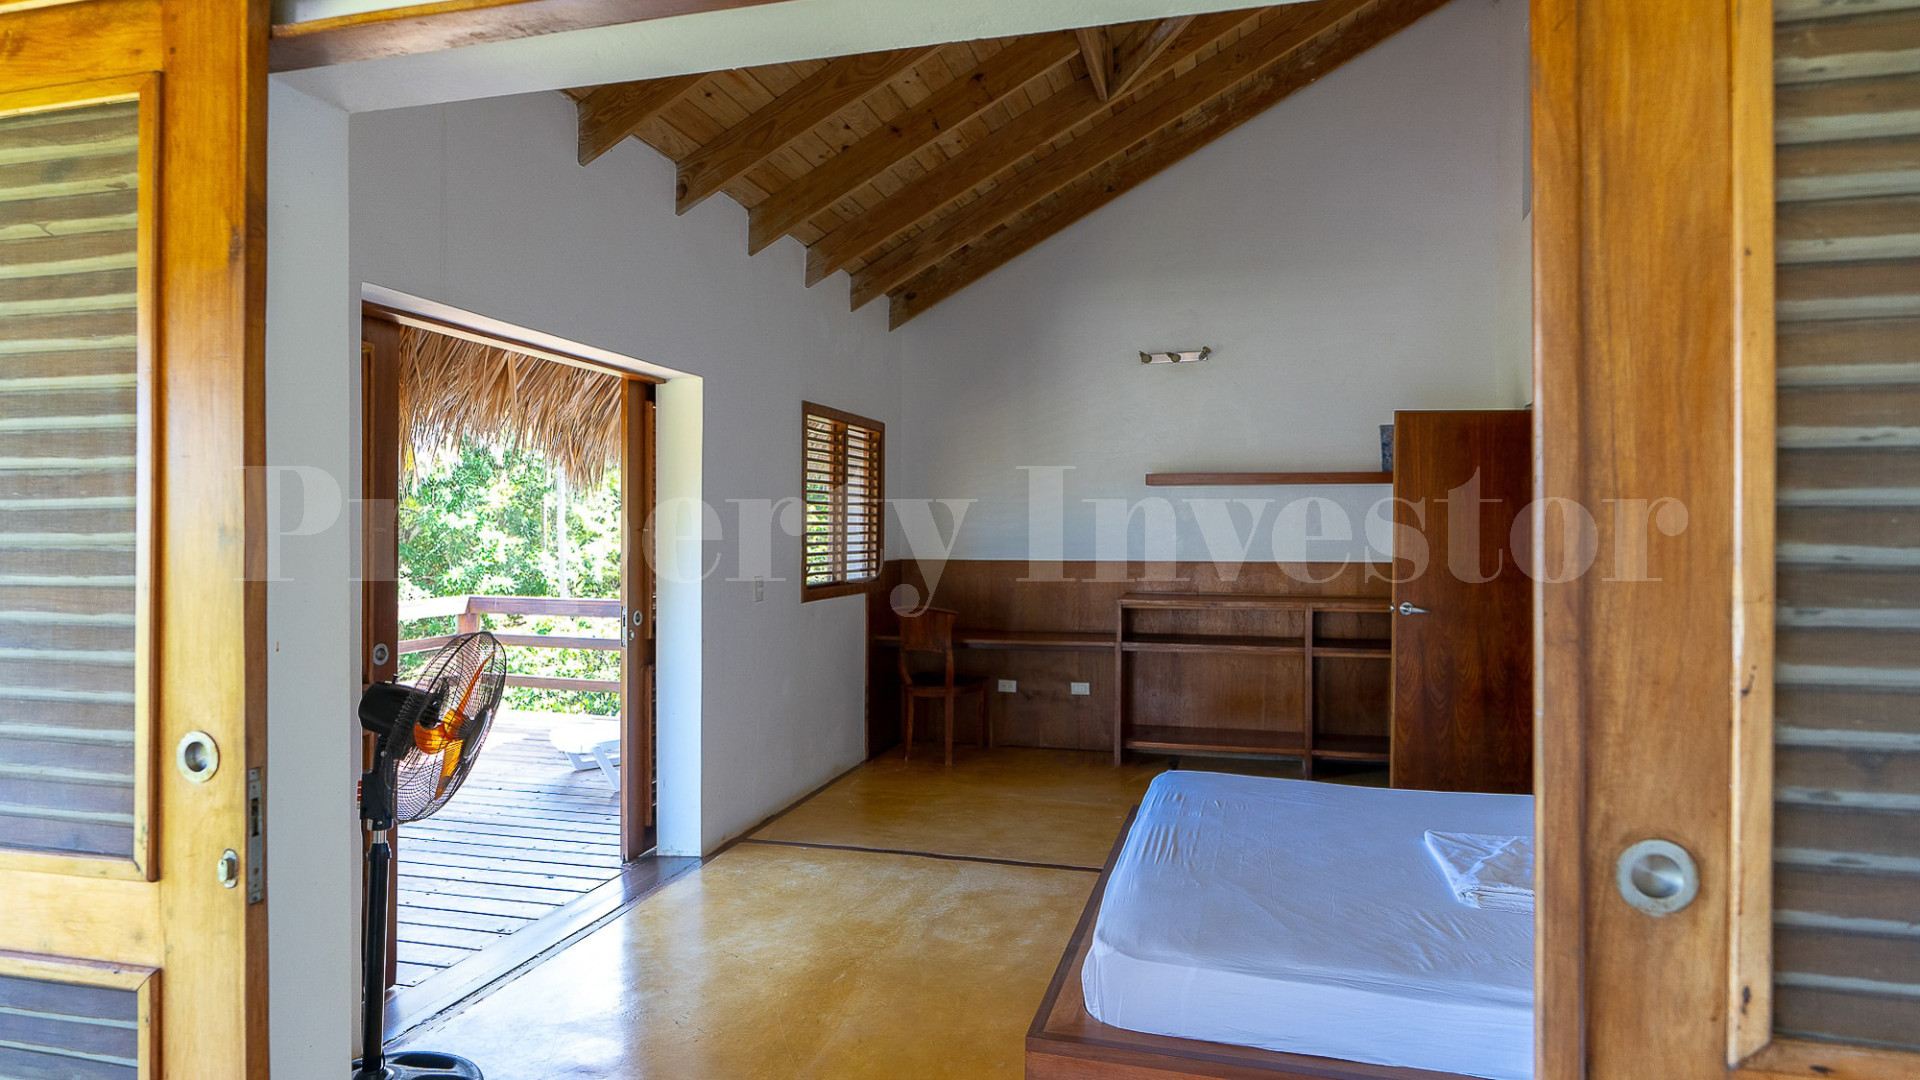 Handcrafted 5 Bedroom Eco Retreat with Incredible Ocean Views & Tropical Gardens for Sale Near Las Terrenas, Dominican Republic